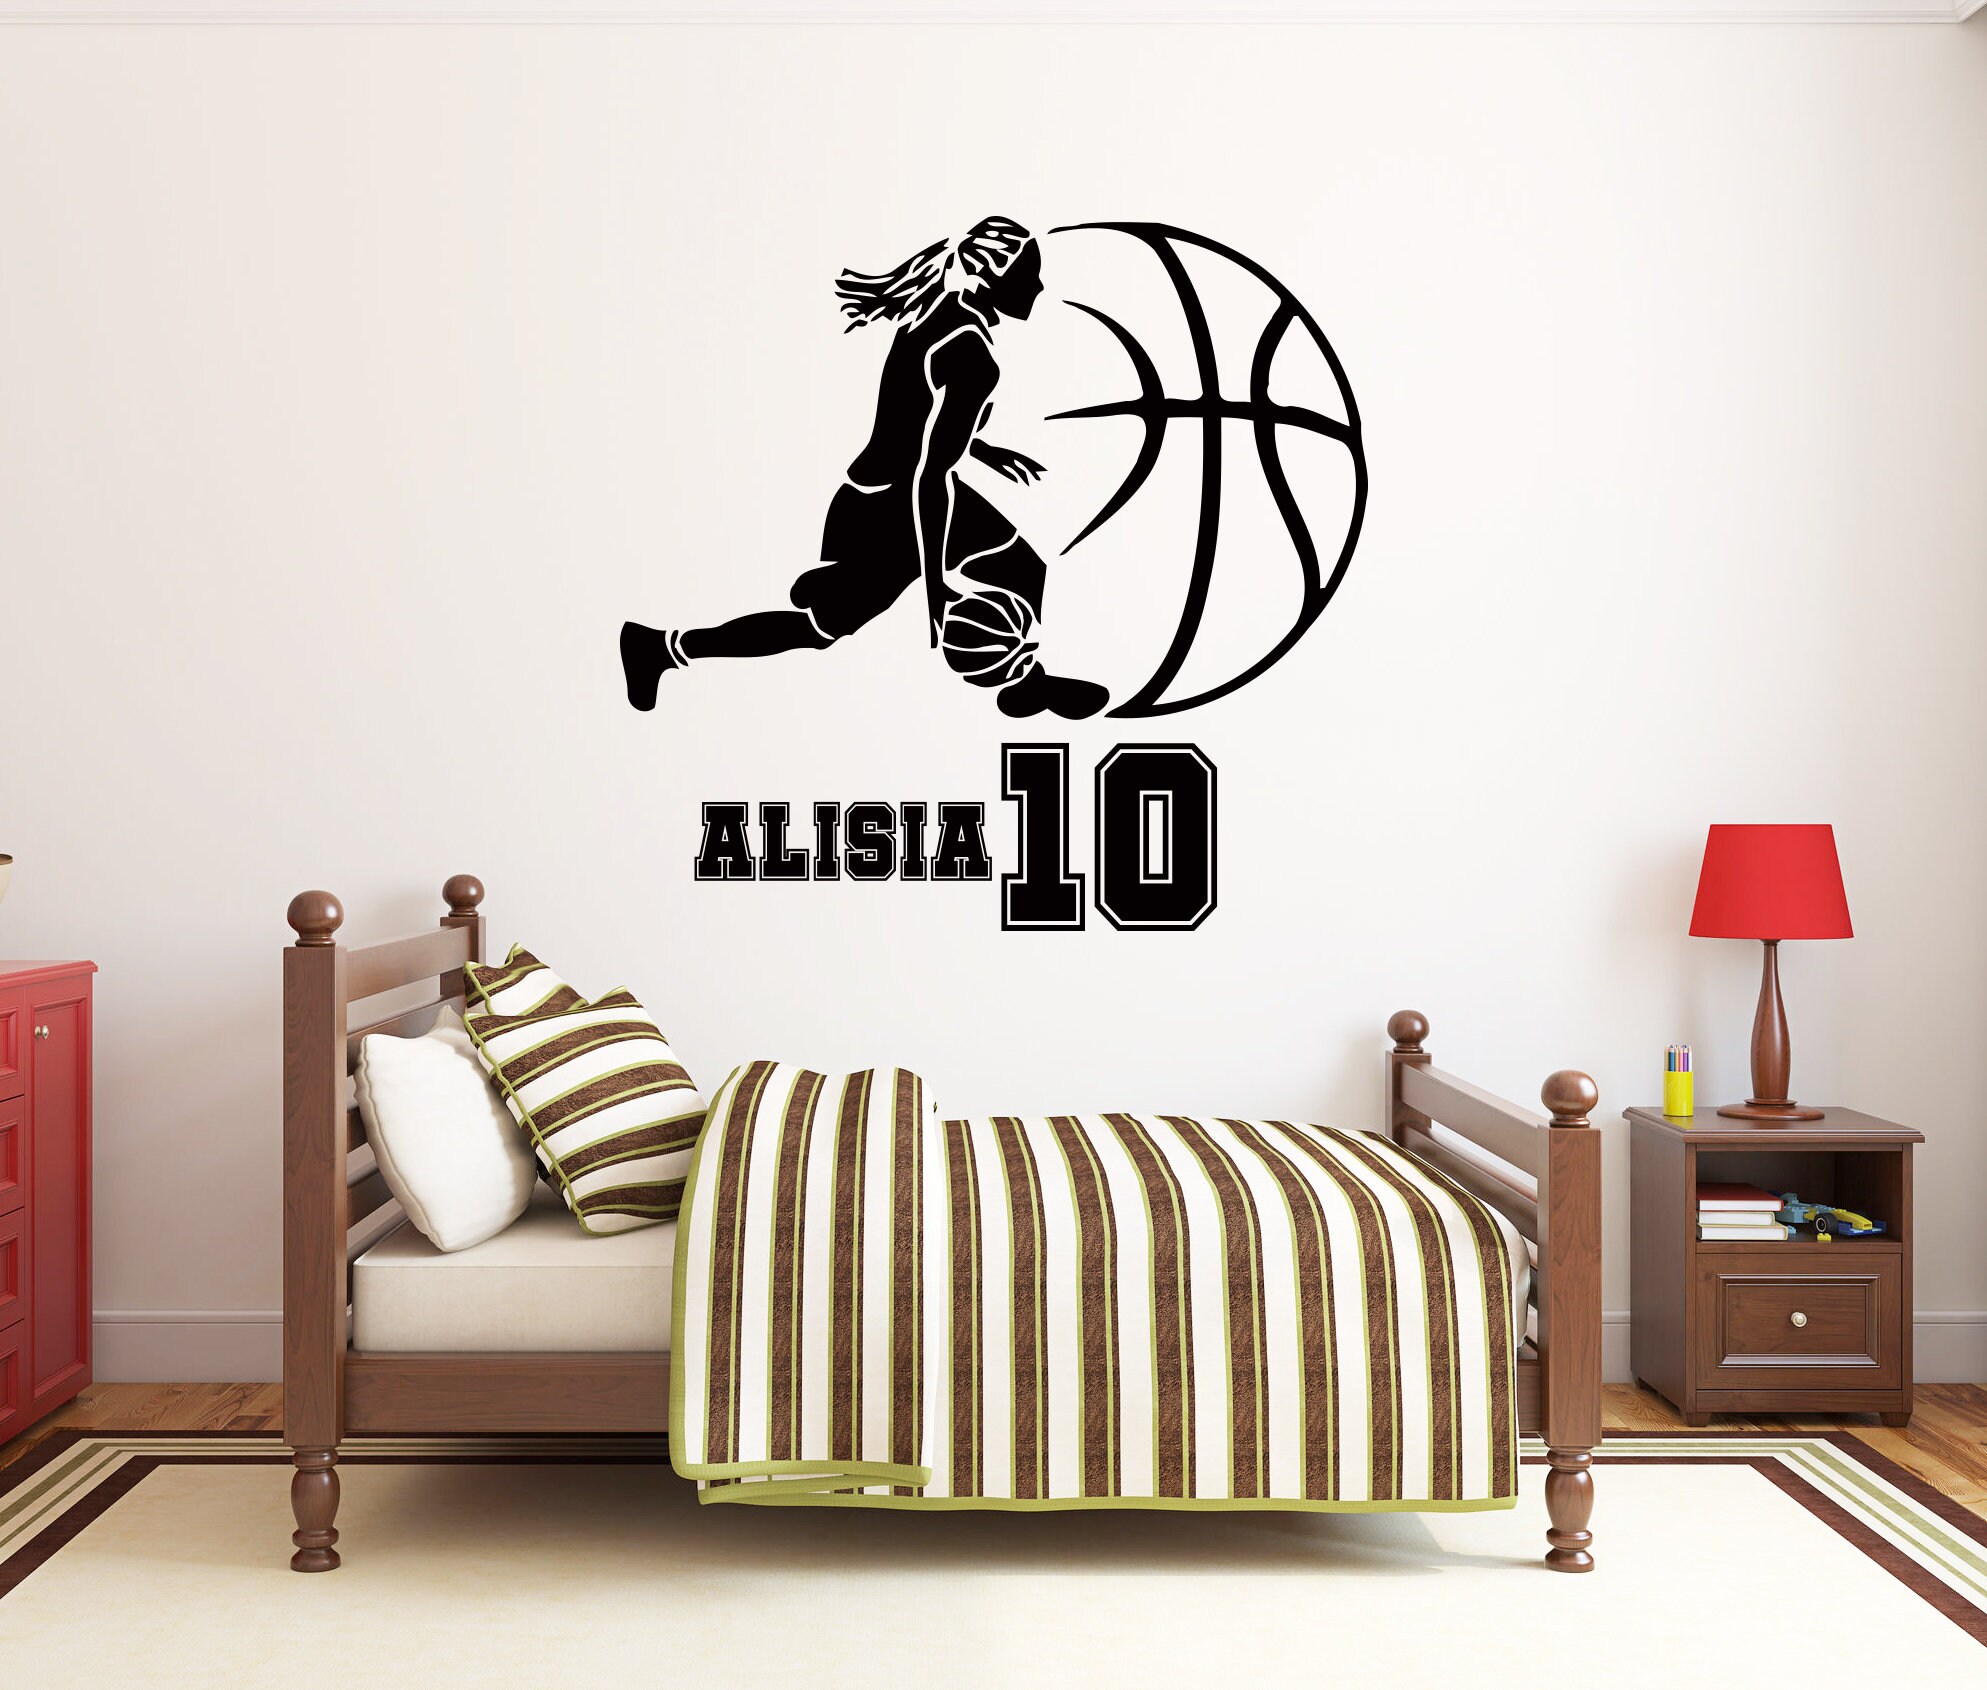 Warriors room  Basketball room, Basketball bedroom, Basketball themed  bedroom